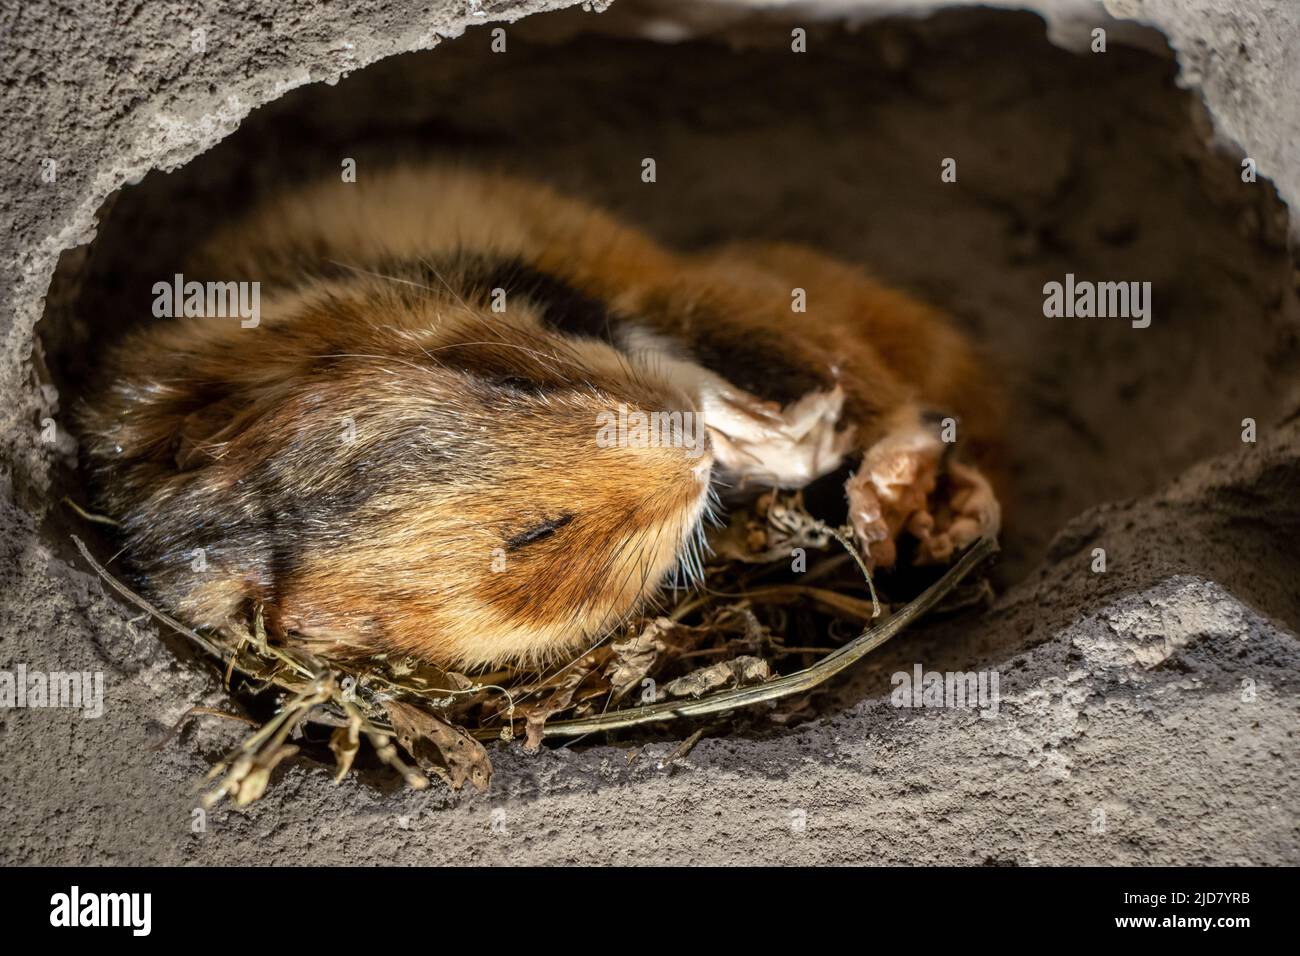 Le hamster dort dans sa terrier. Le hamster européen (Cricetus cricetus) - hamster commun est hibernate dans le repaire. Banque D'Images